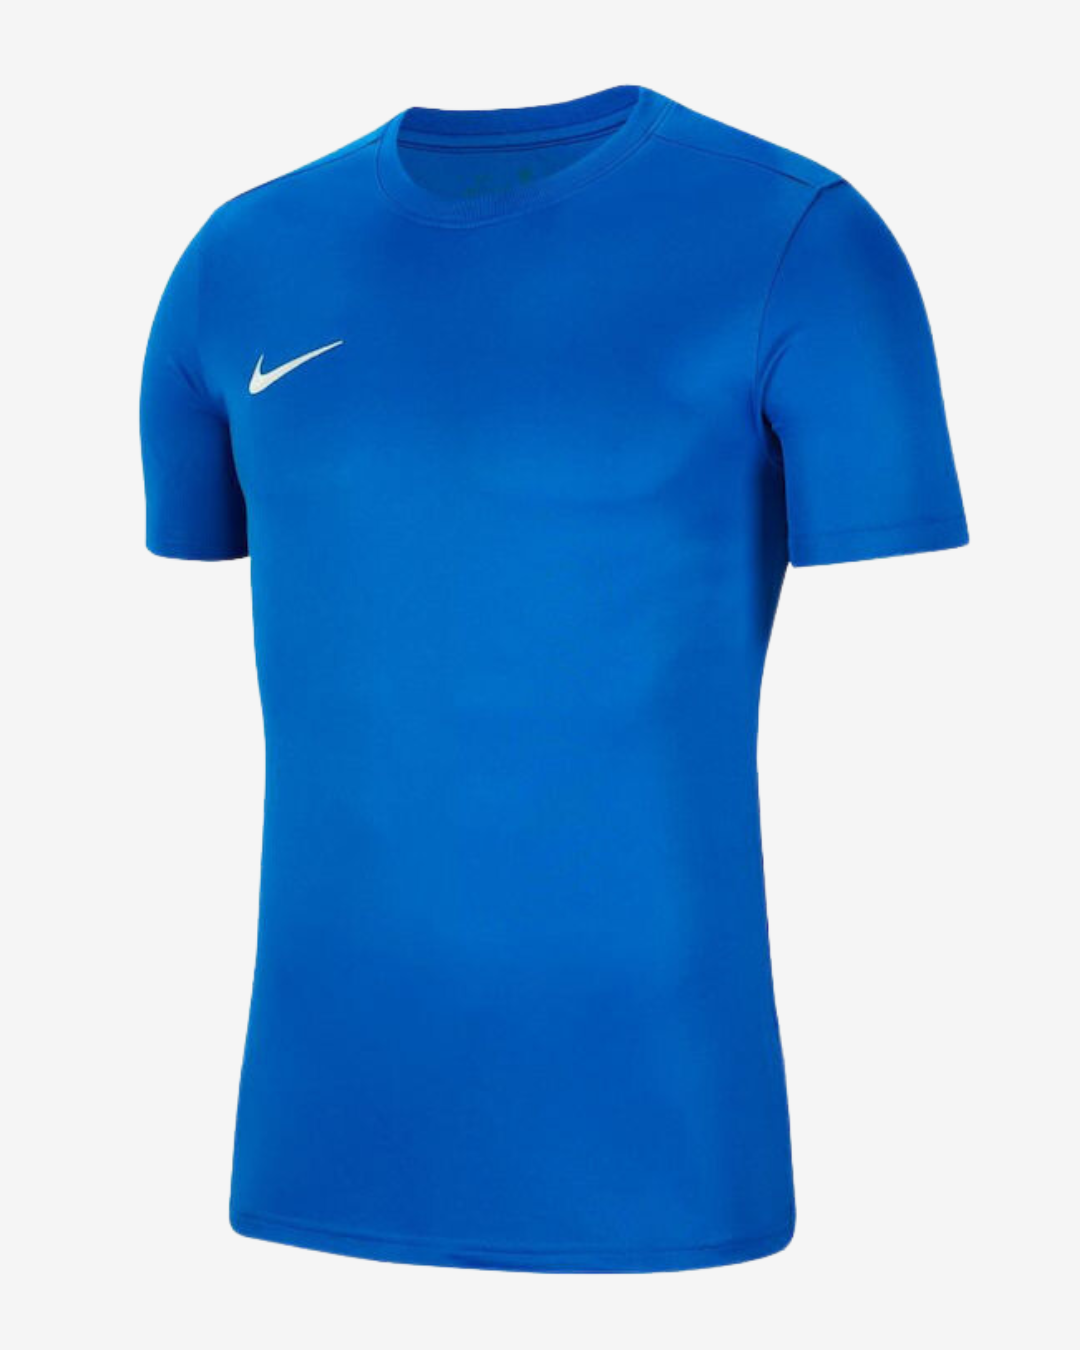 Nike Dri-fit park 7 t-shirt - Blå - Str. XL - Modish.dk